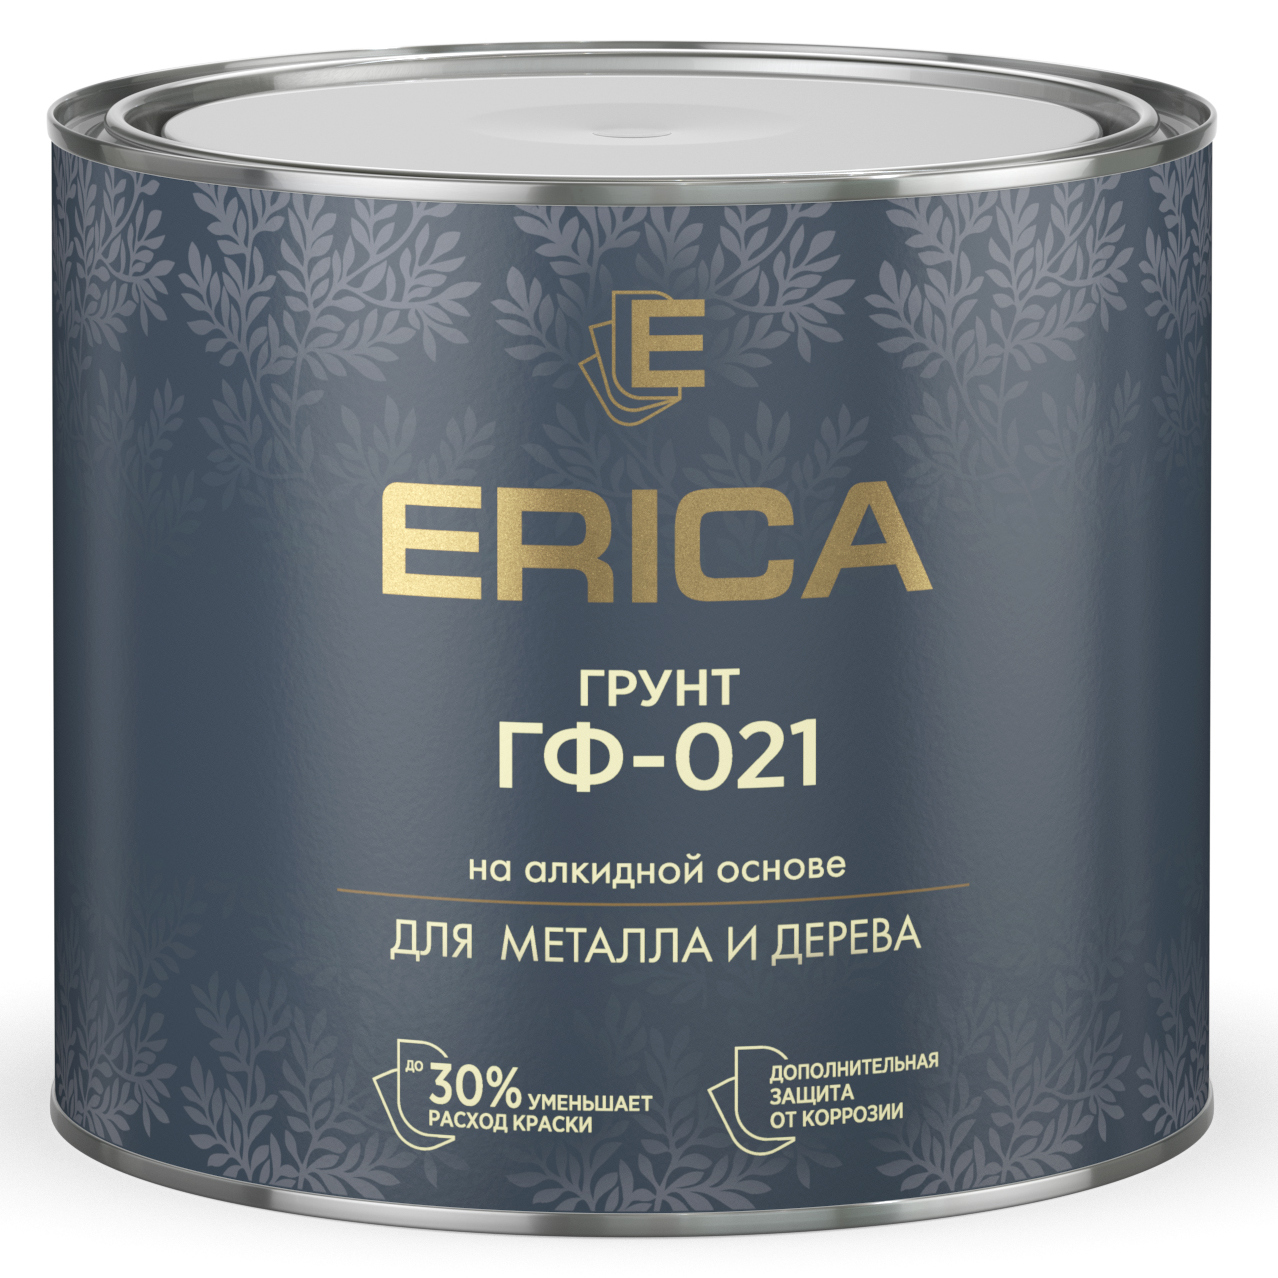 Грунт ГФ-021 ЧЕРНЫЙ 1,8 кг Erica (6)